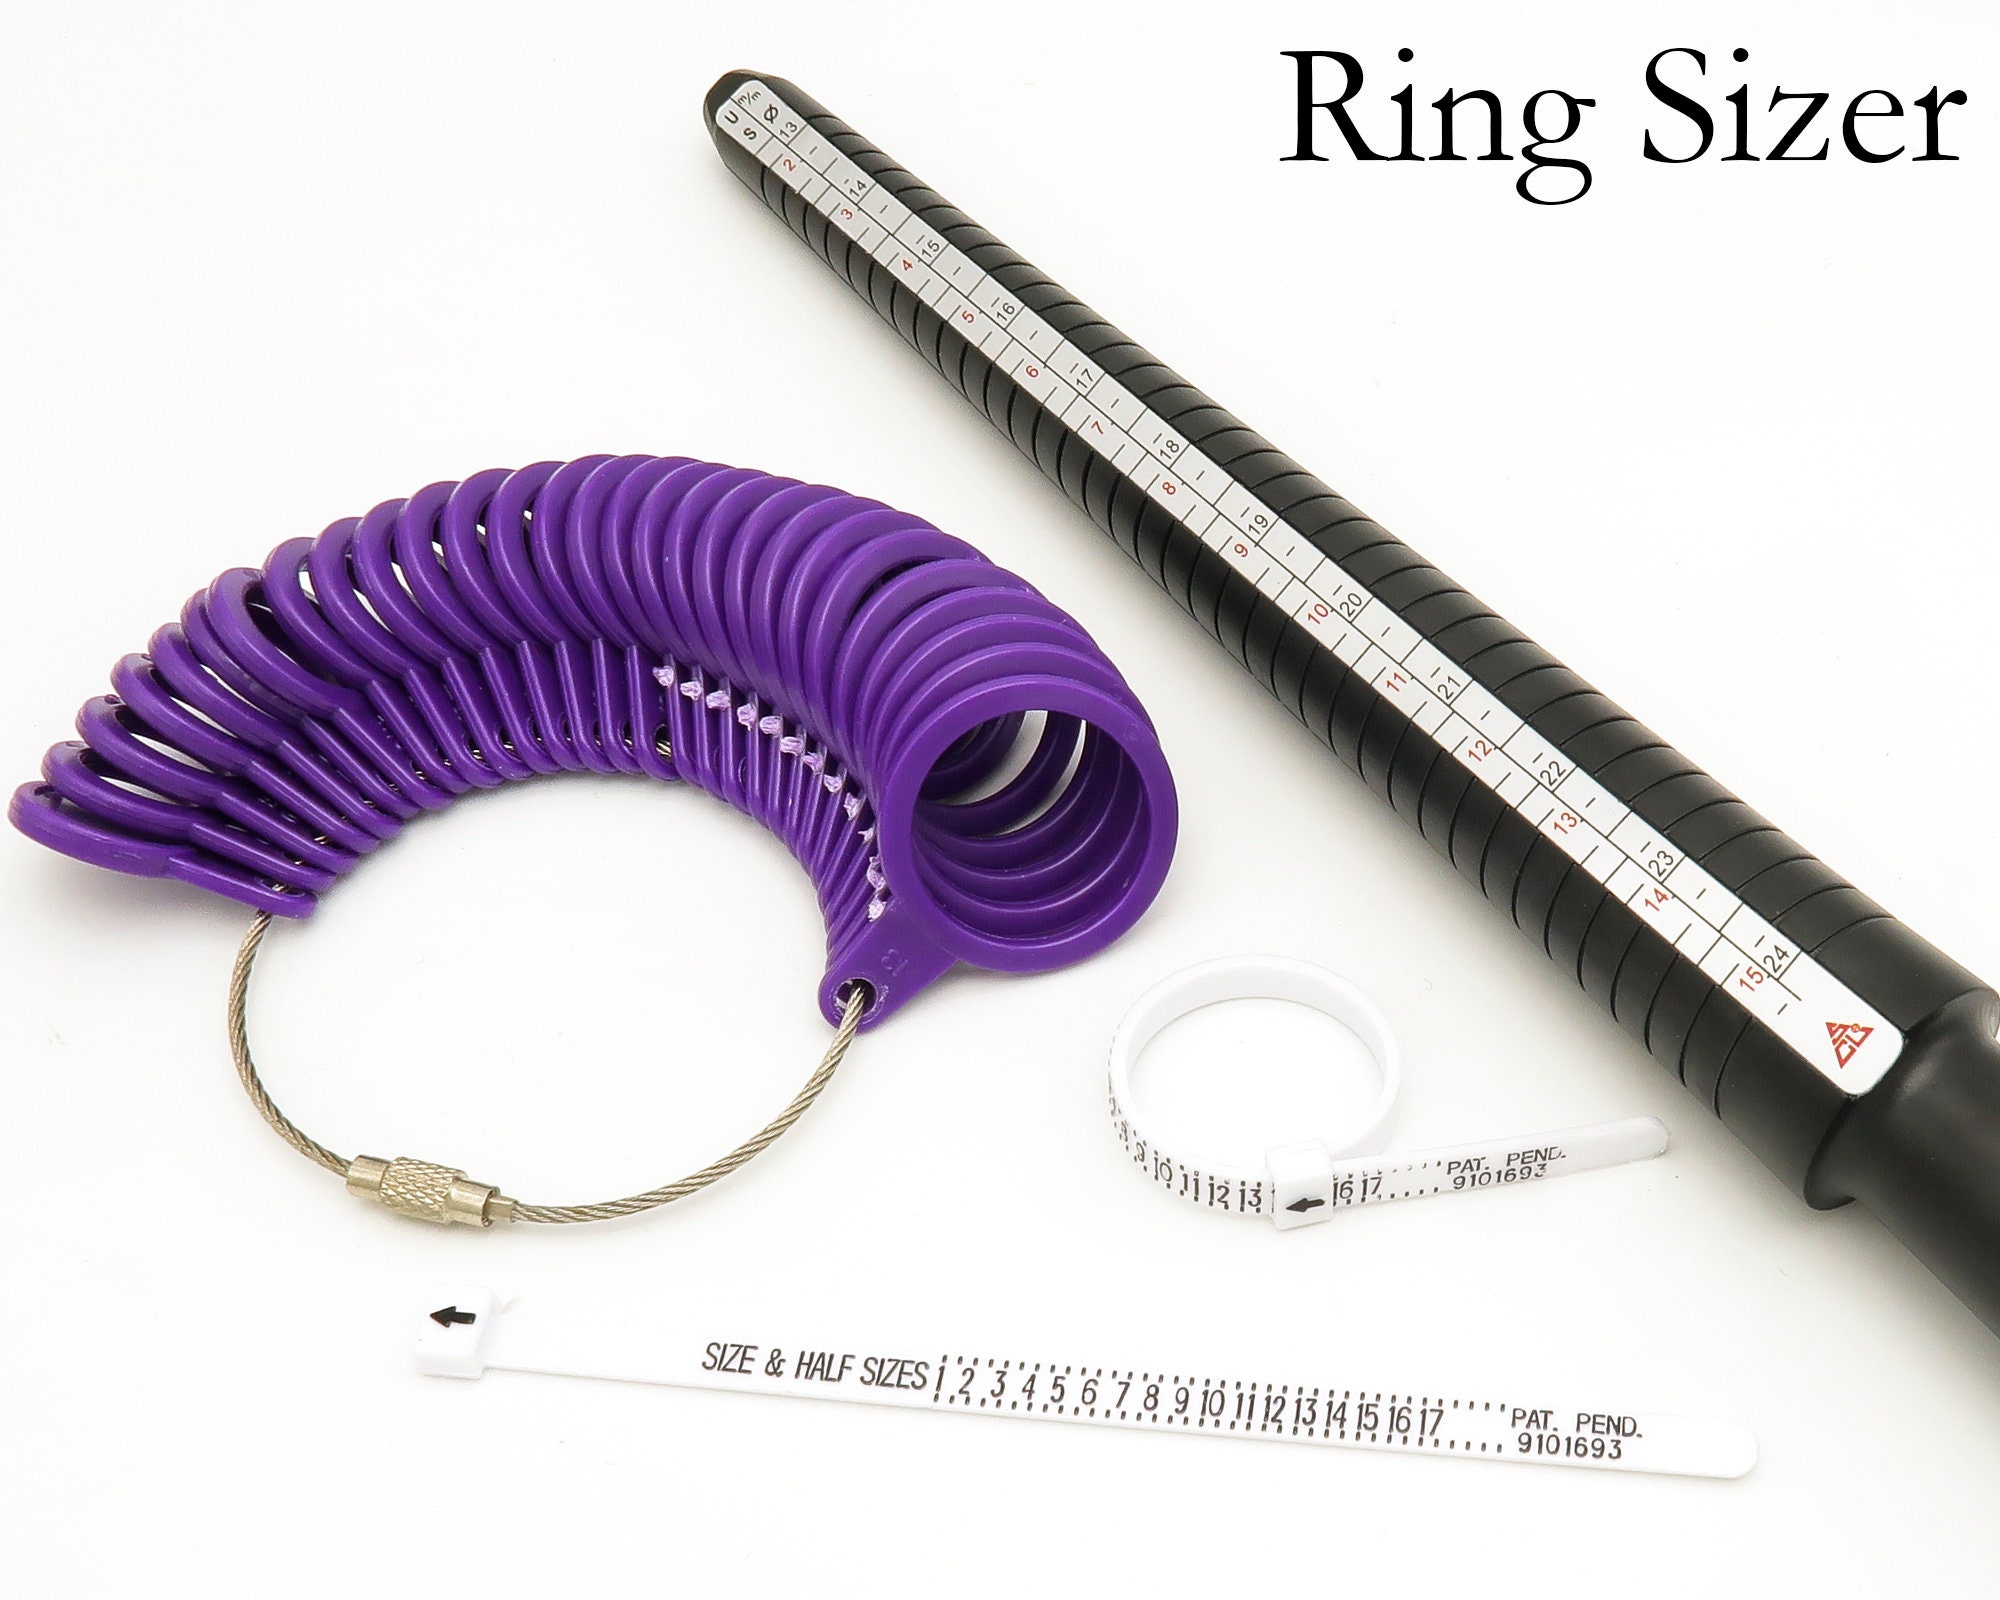 Medidor de anillo, mandril de anillos, calibre de dedo, calibre de anillo,  herramienta de joyería de Hong Kong, tamaño de Hong Kong, para hacer joyas